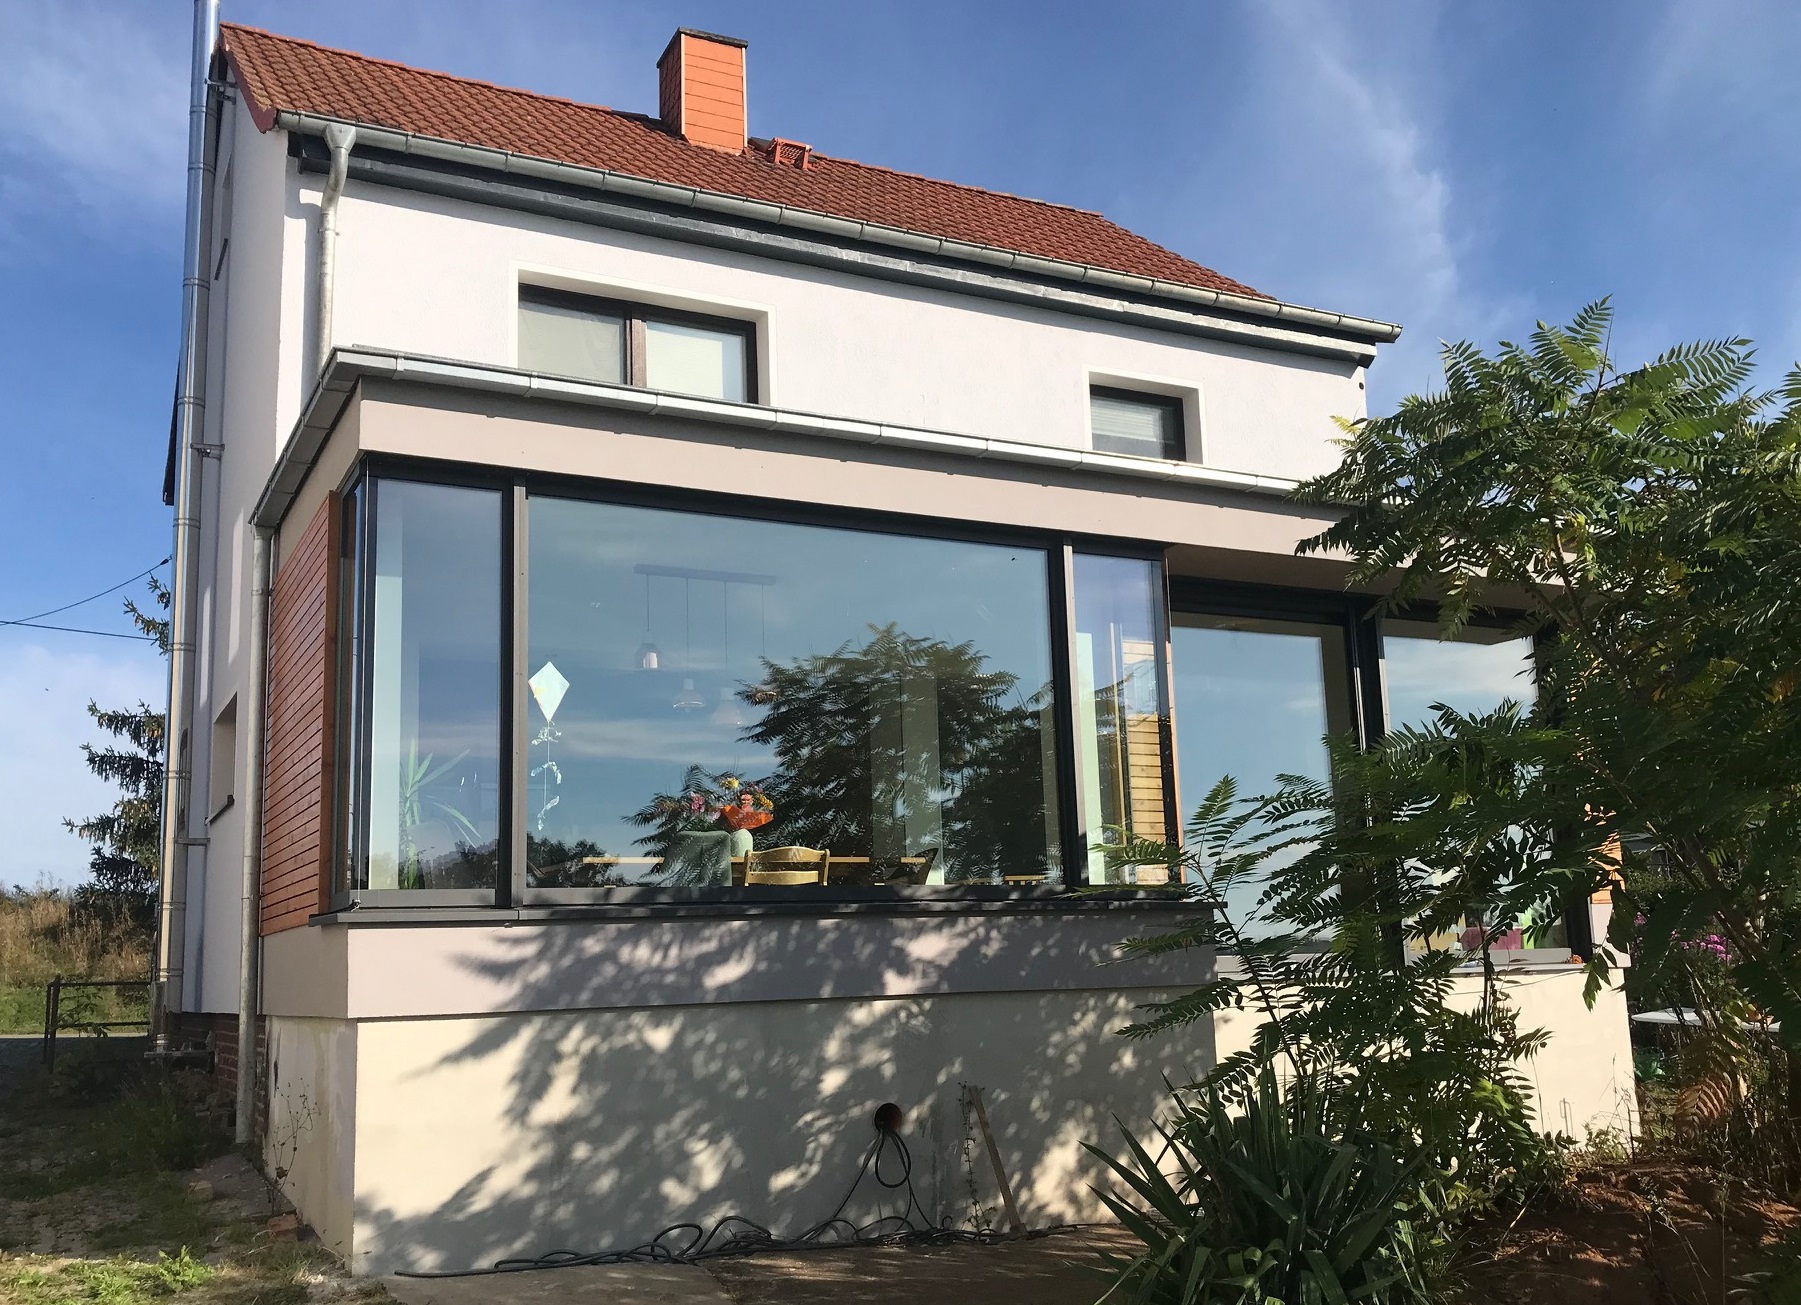 Wohnhaus-Update in Frankenhausen